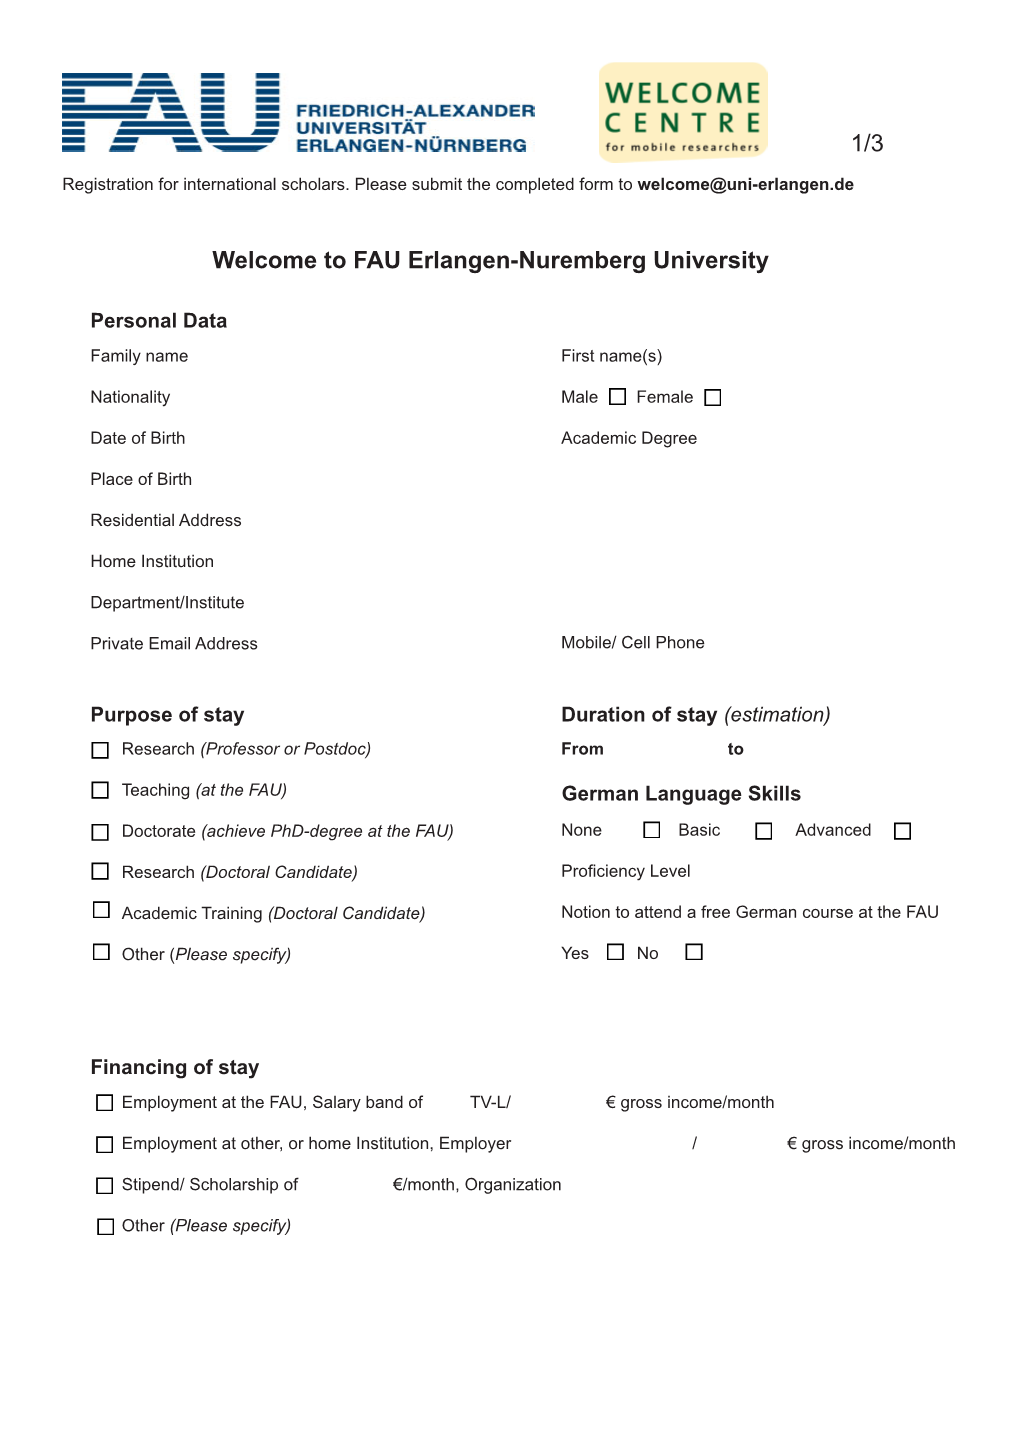 Welcome to FAU Erlangen-Nuremberg University